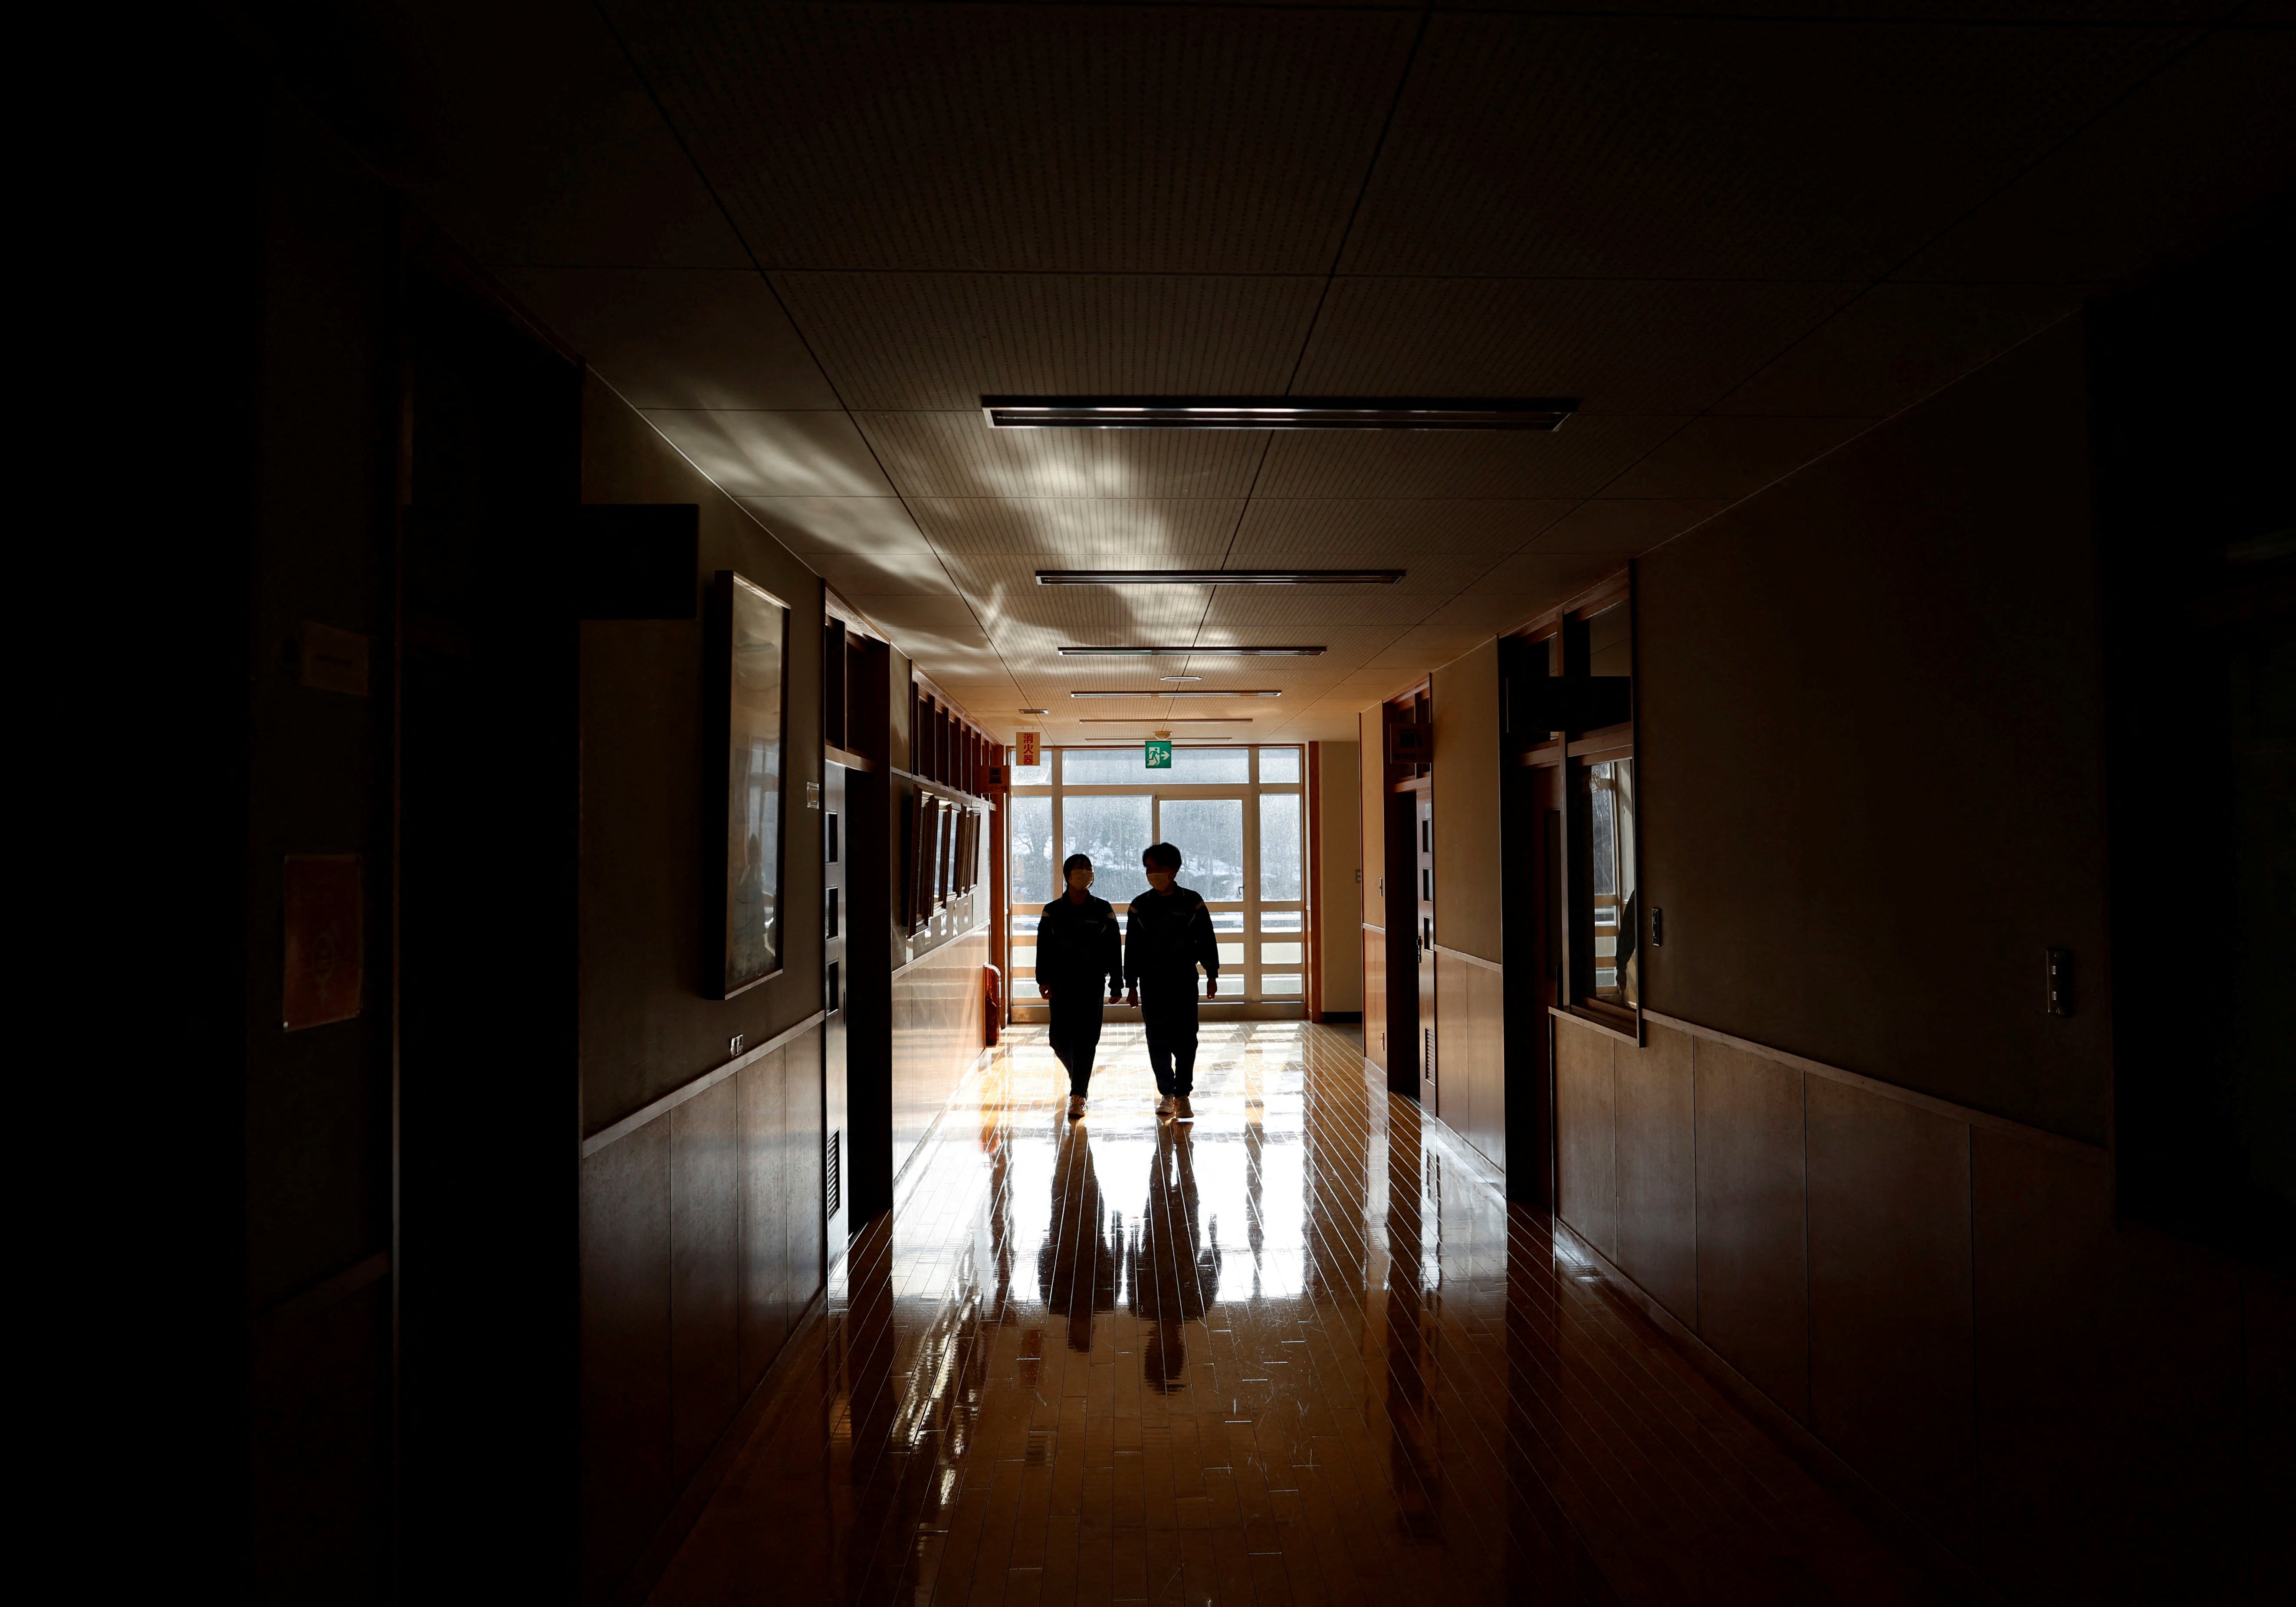 Empty feeling: Eita and Aoi walk along the corridor of their school